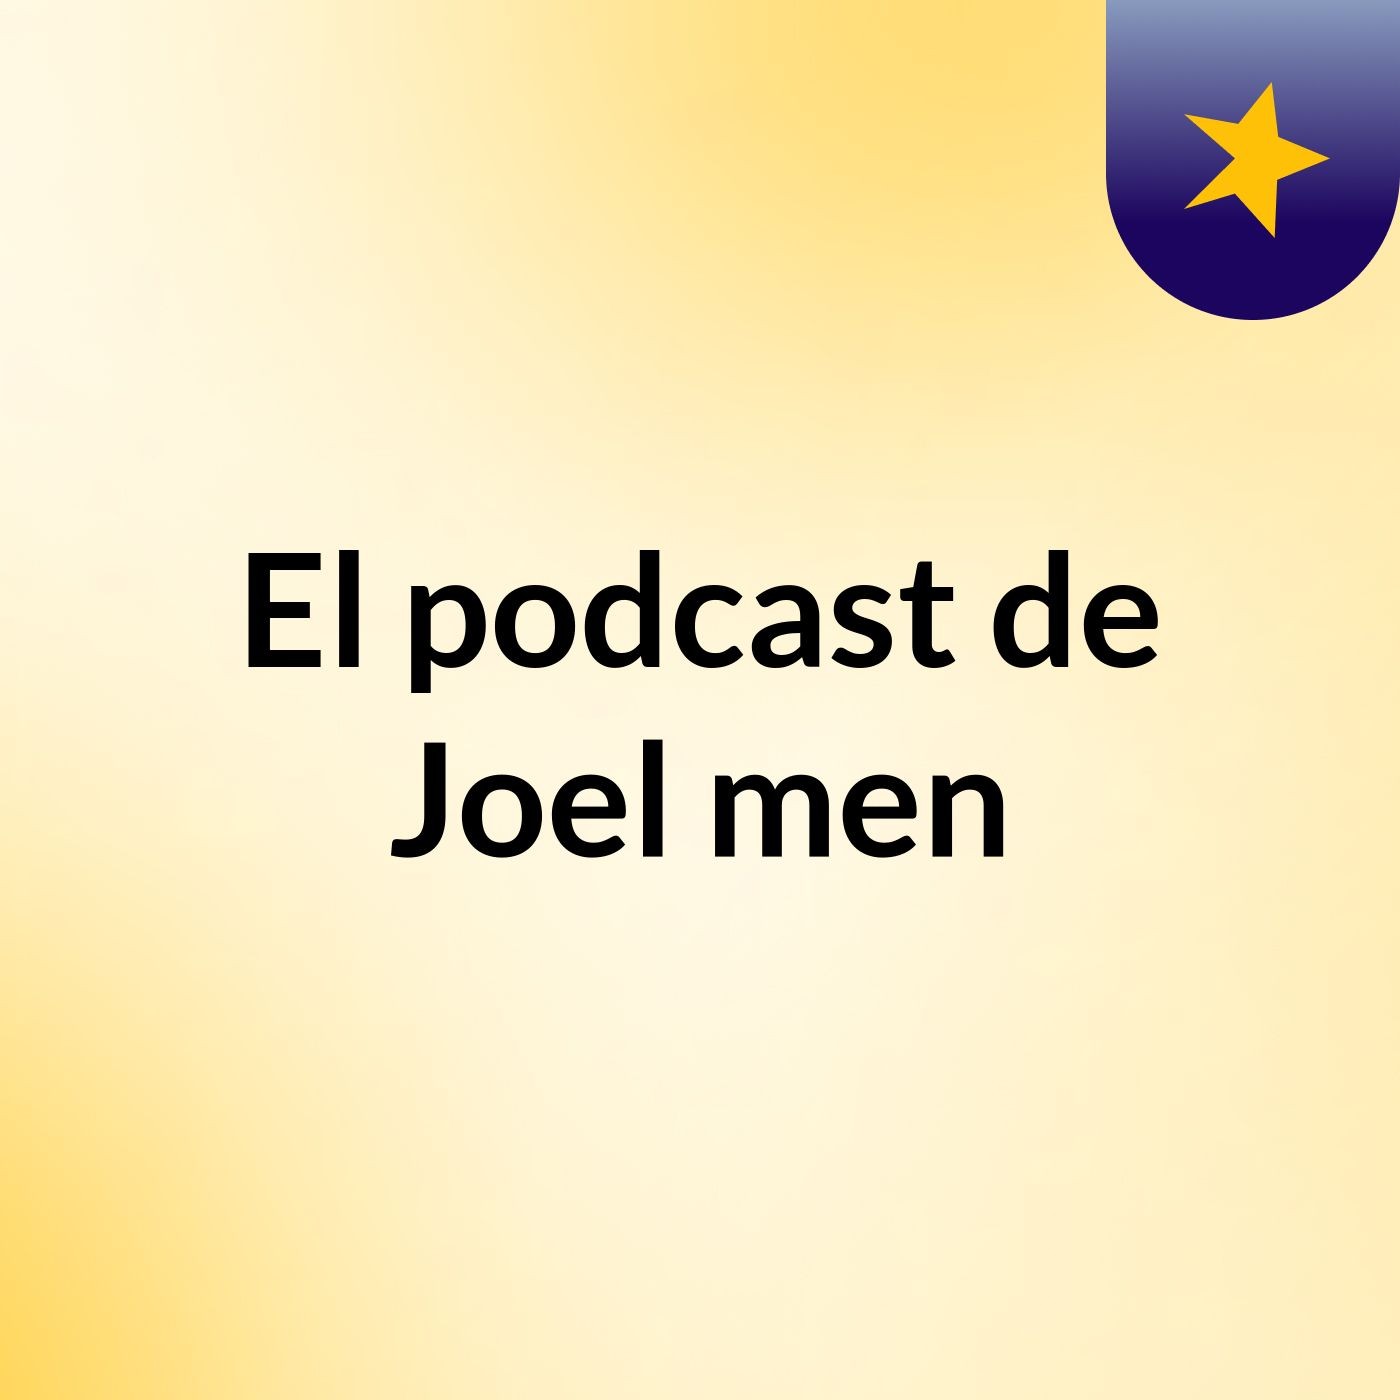 El podcast de Joel men